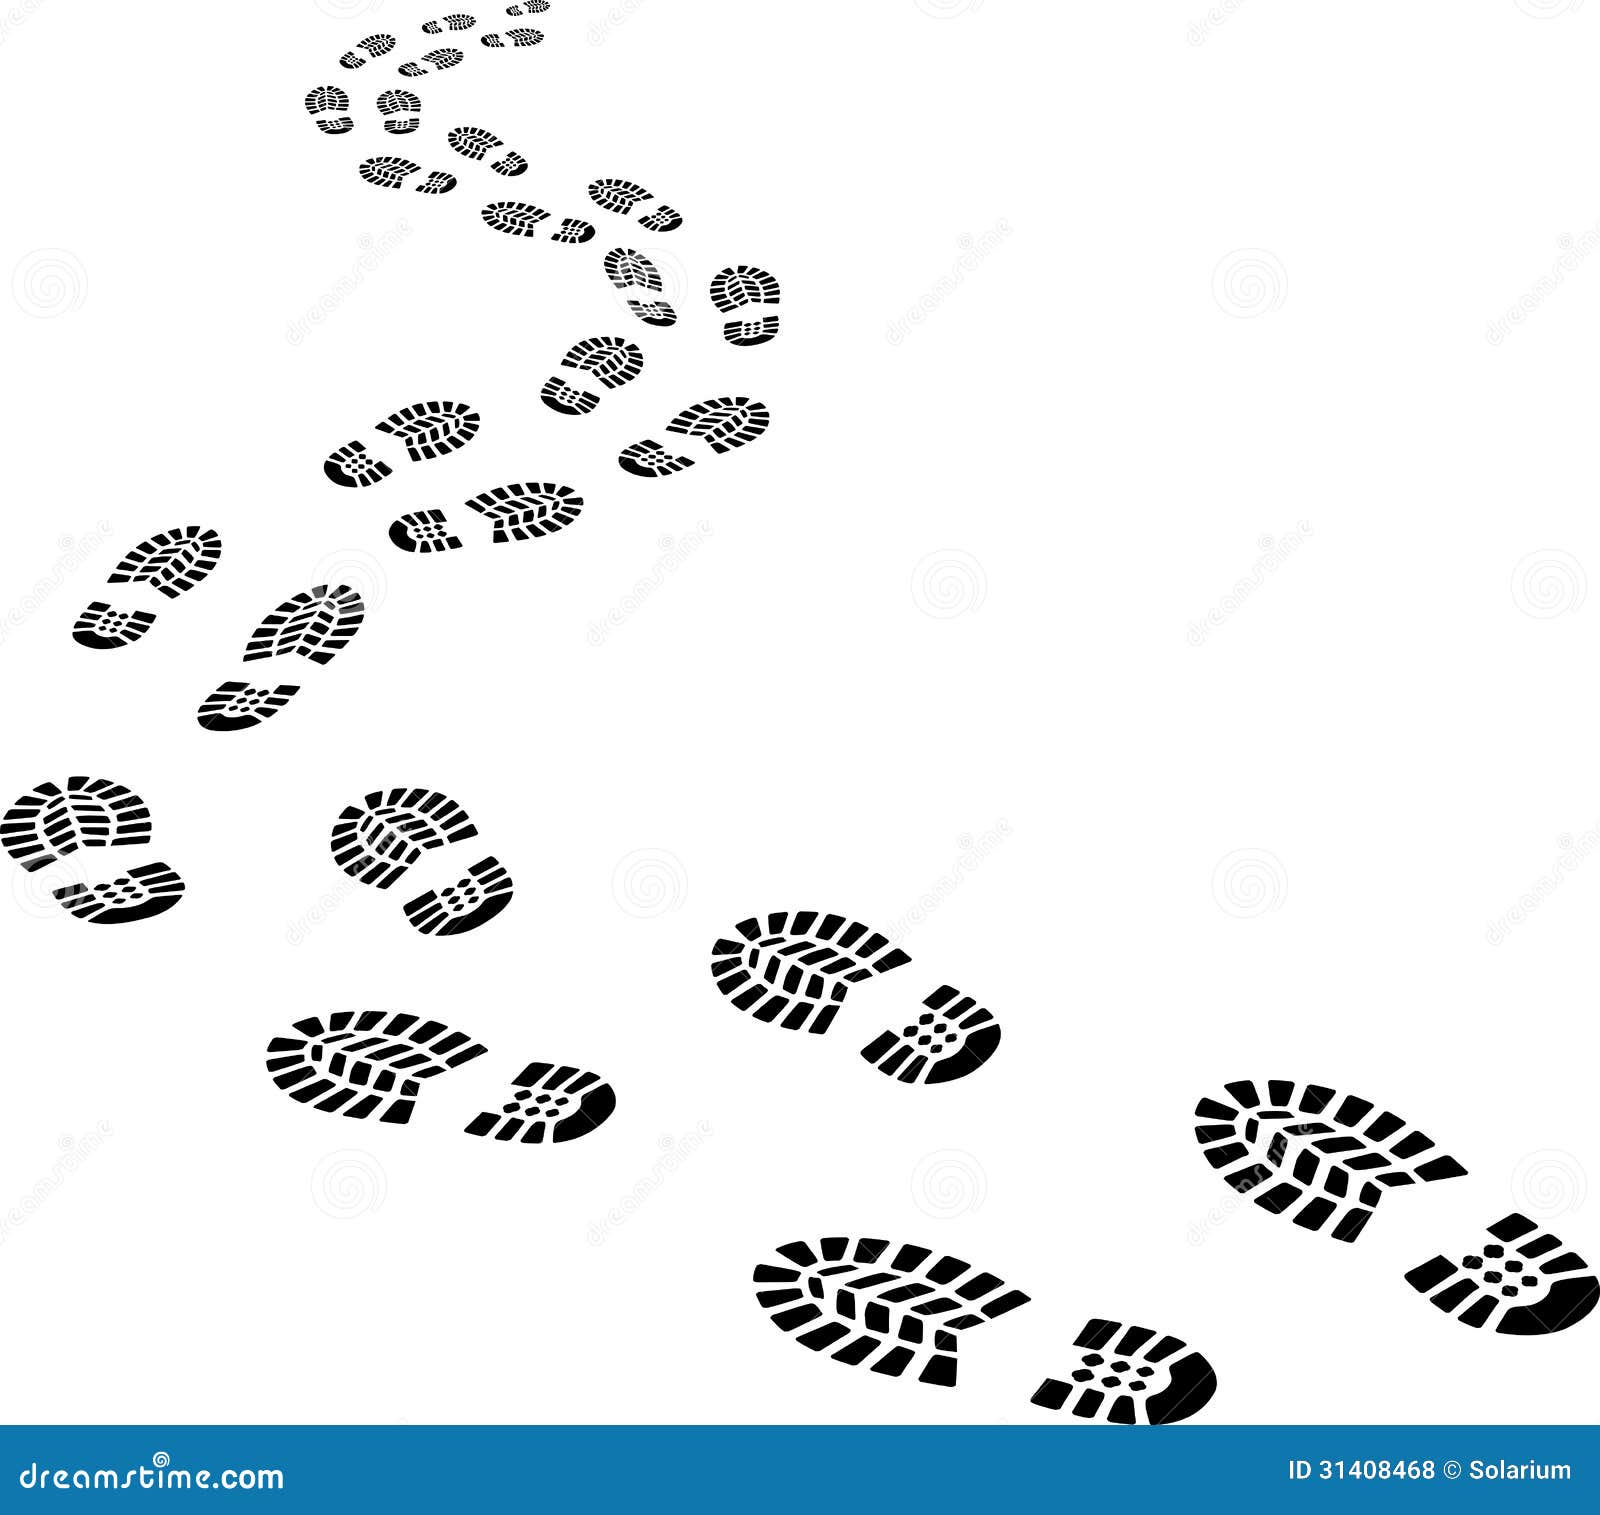 receding-footprints-clip-art-illustration-31408468.jpg